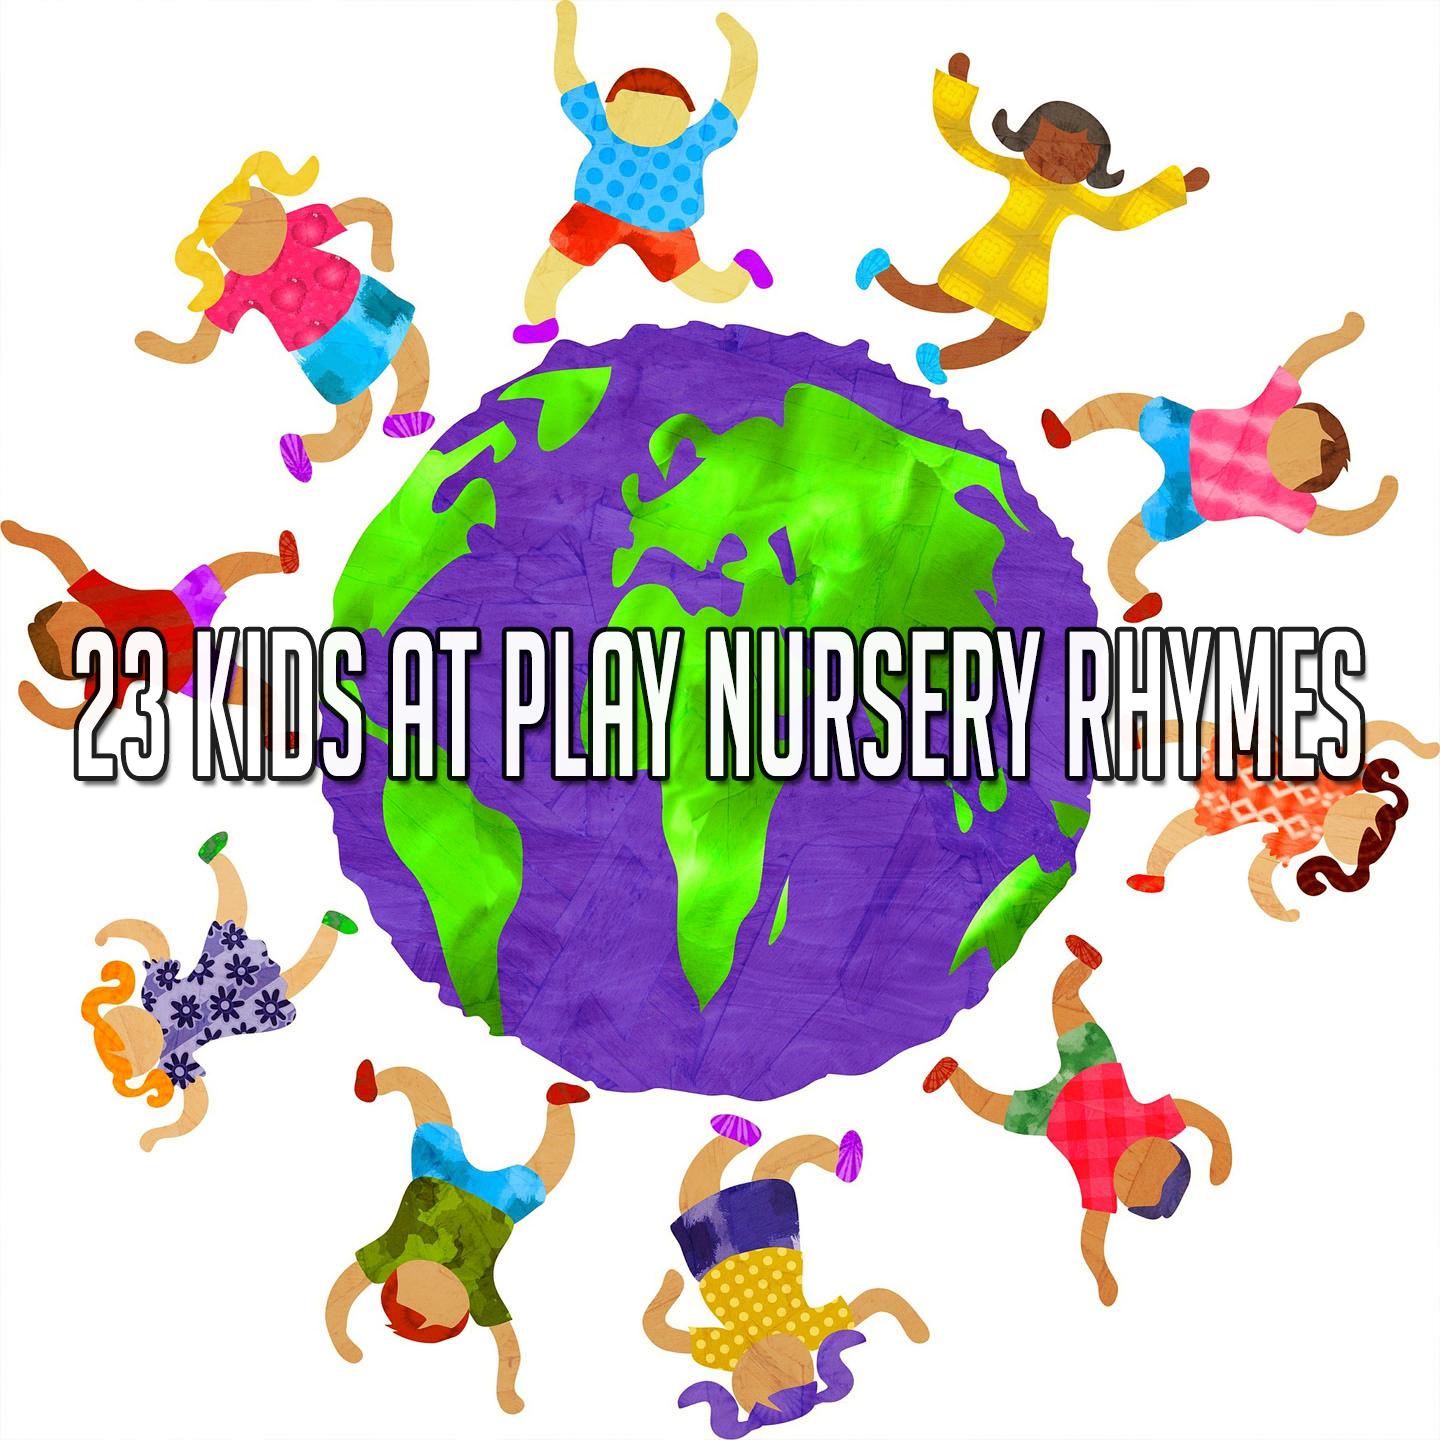 23 Kids at Play Nursery Rhymes